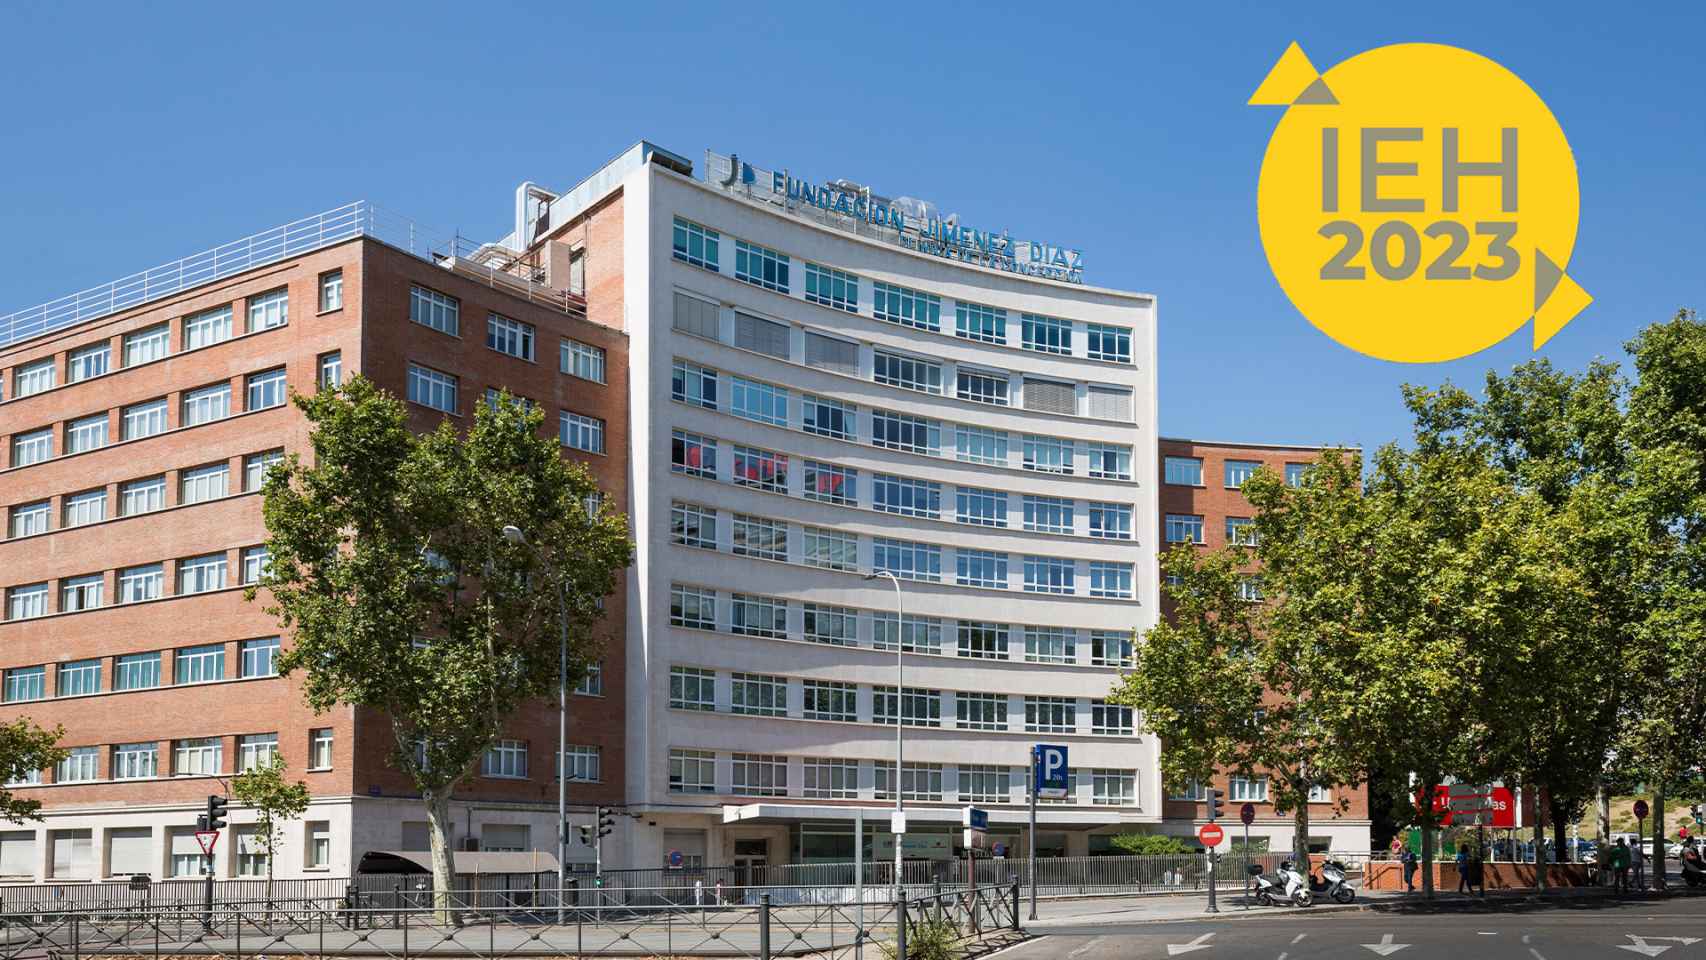 La Fundación Jiménez Díaz, mejor hospital de España por octavo año consecutivo según el IEH 2023